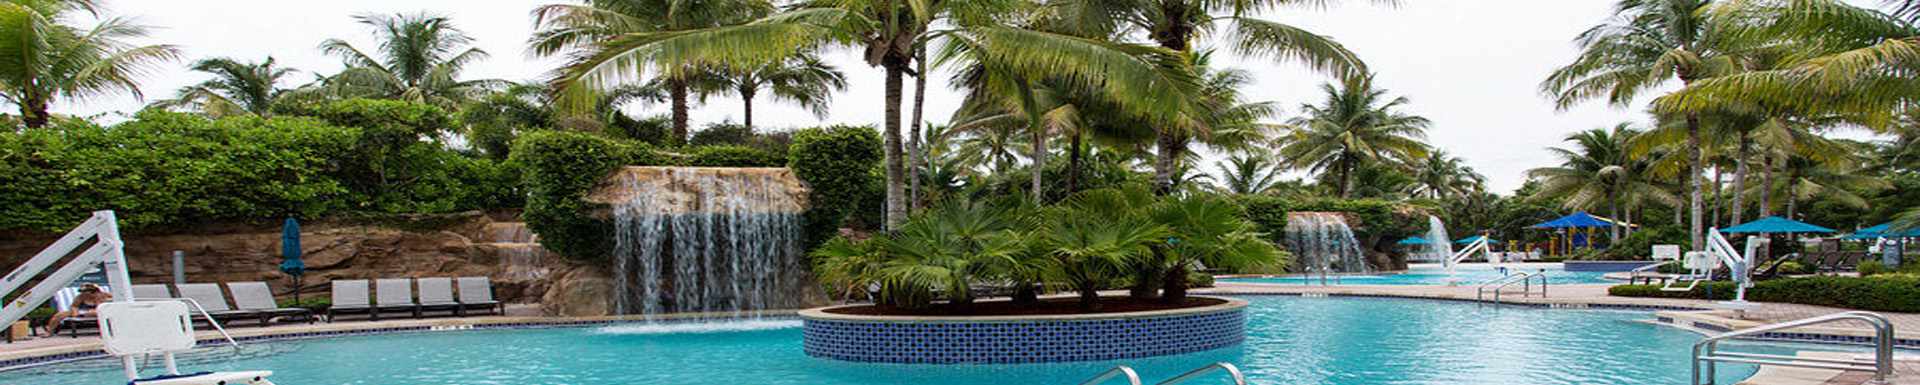 Hyatt Residence Club Bonita Springs, Coconut Plantation